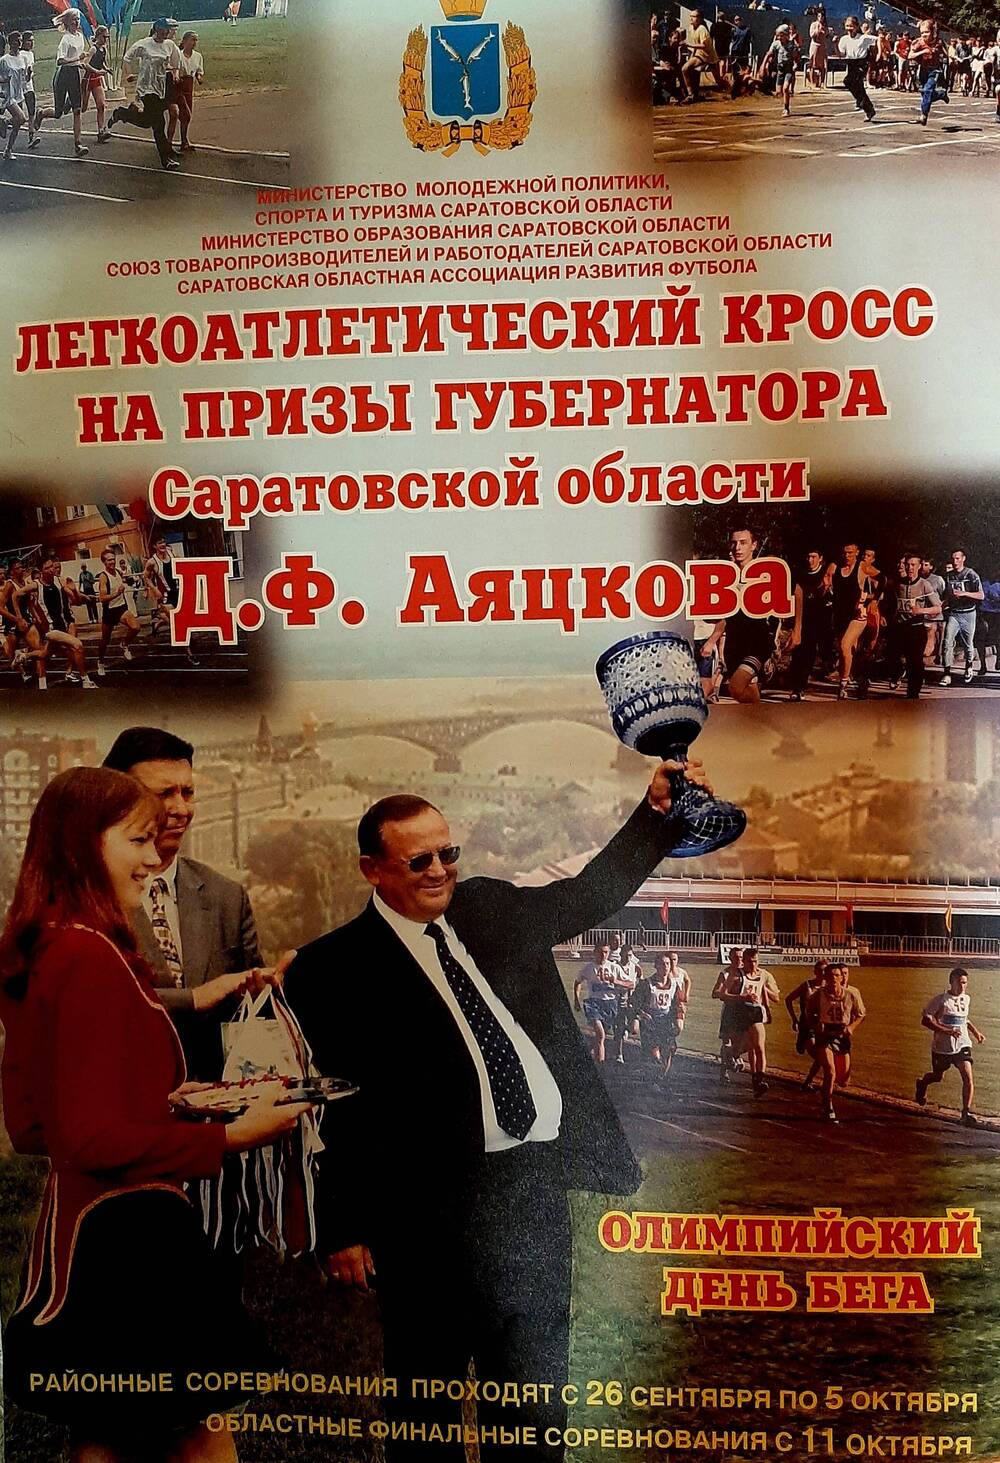 Плакат Лёгкоатлетический кросс на призы губернатора Саратовской области Д. Ф. Аяцкова. Олимпийский день бега.